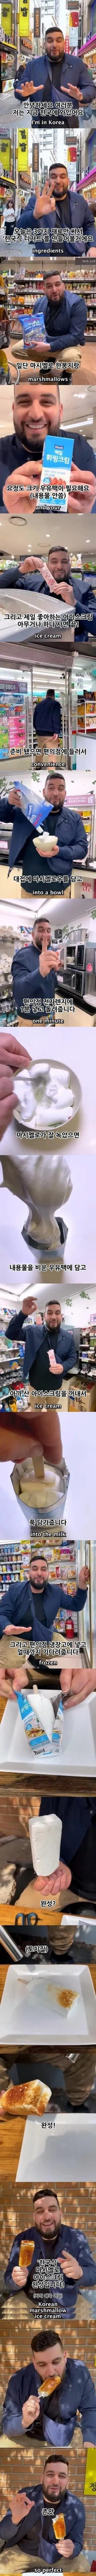 [유머] 한국식 디저트 만들기 -  와이드섬